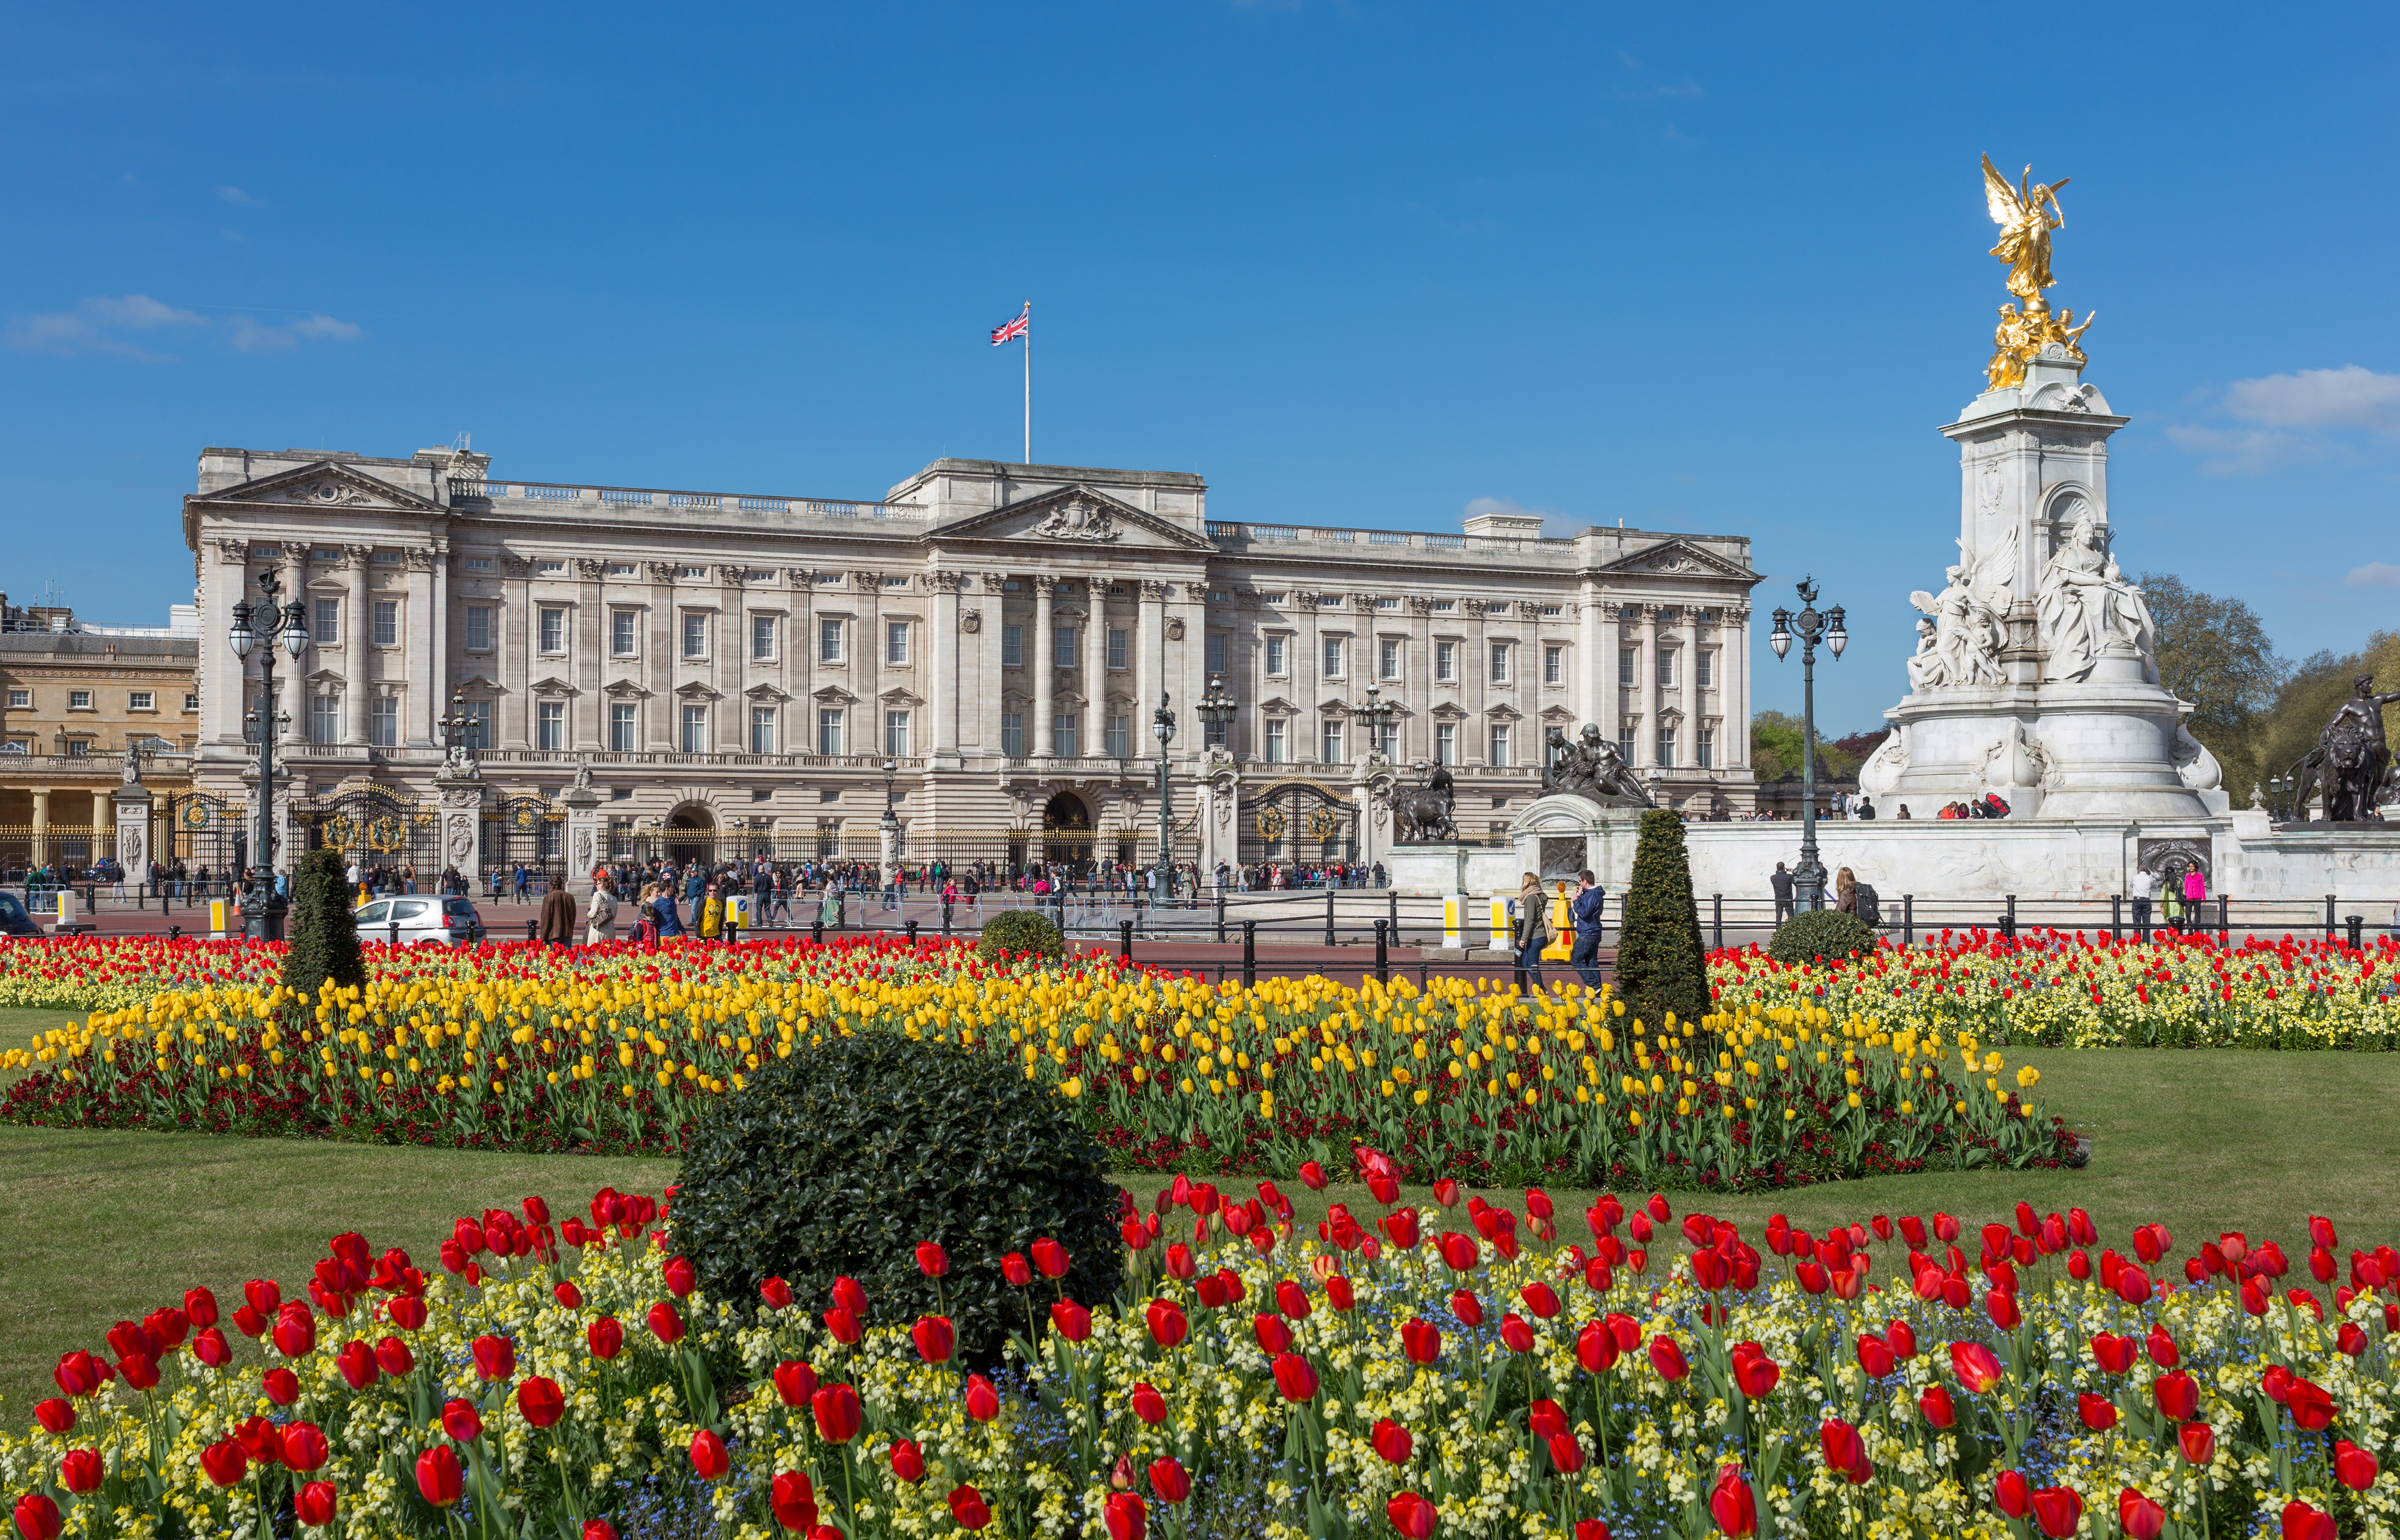 Buckingham Palace #21